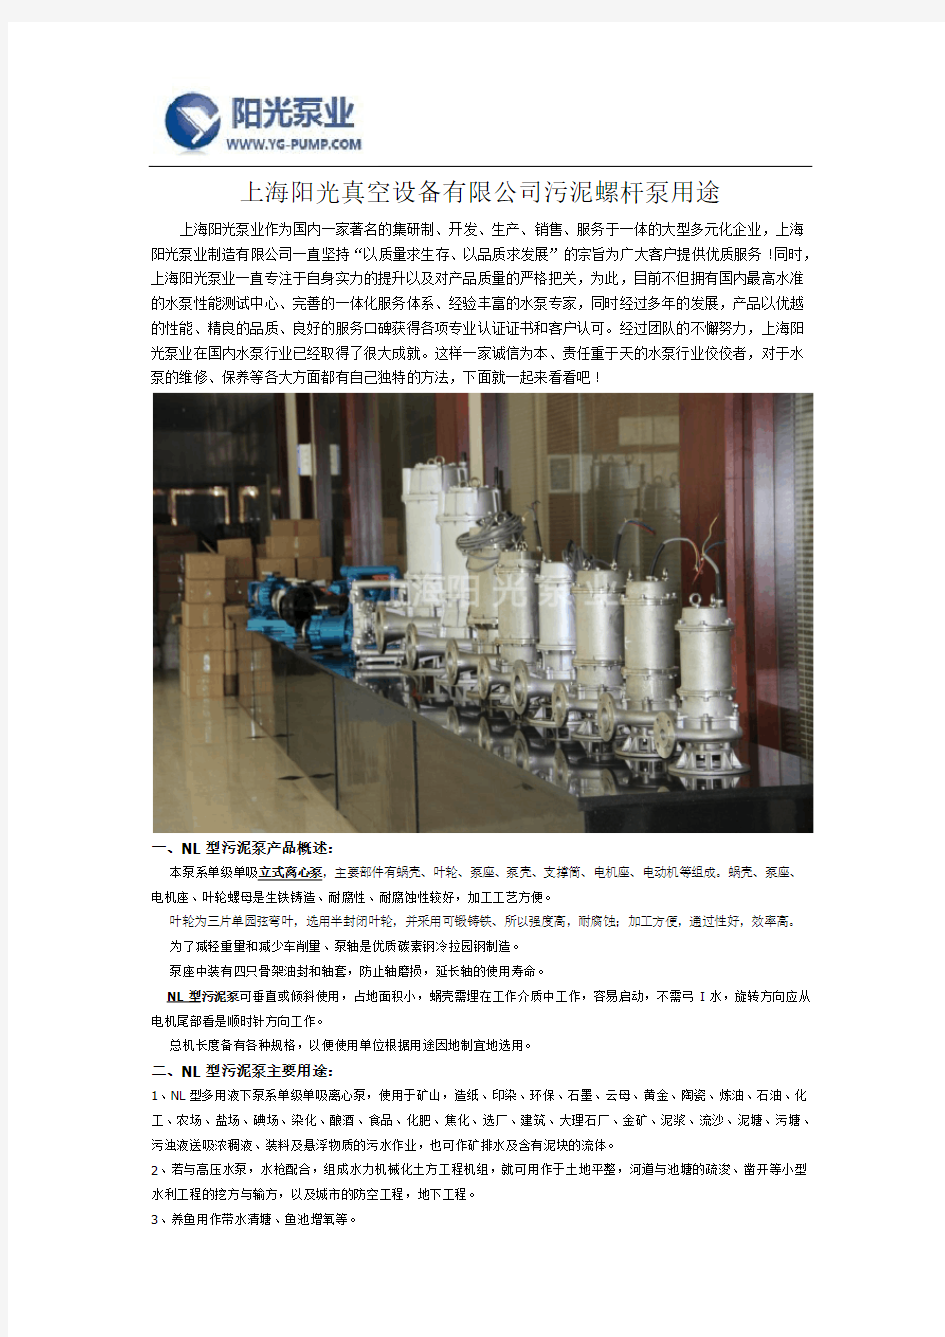 上海阳光真空设备有限公司污泥螺杆泵用途